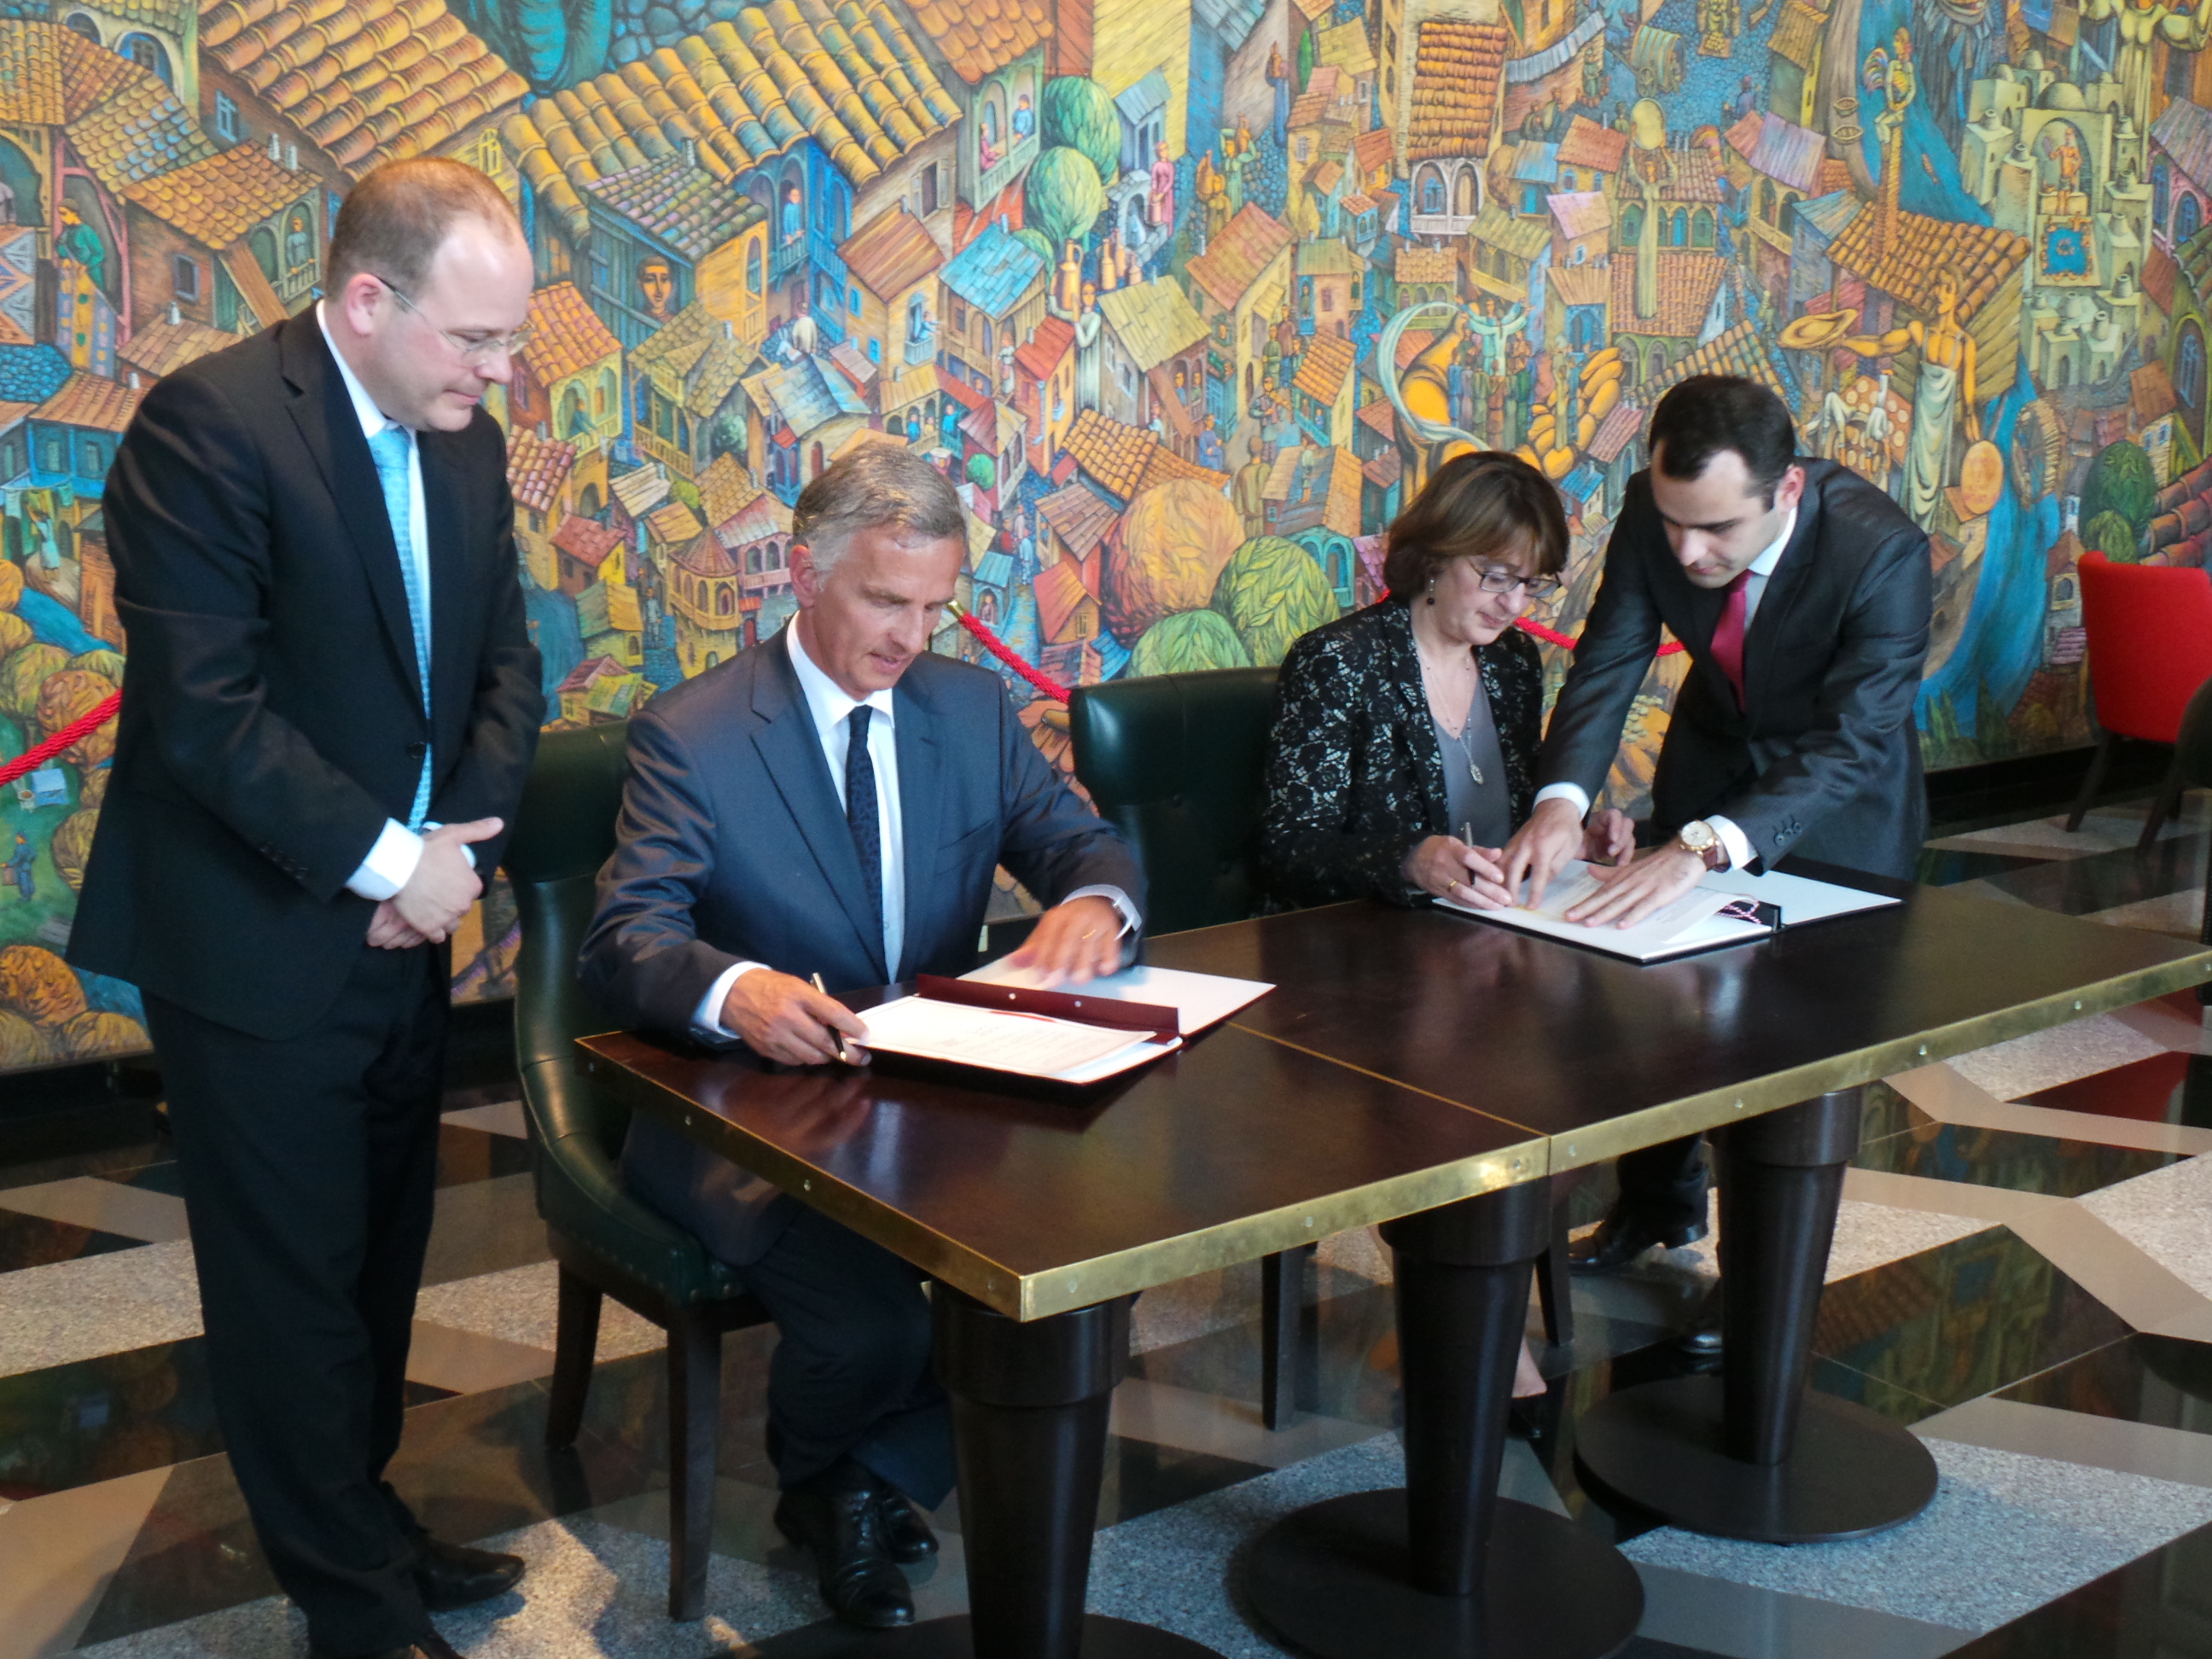 Le président de la Confédération Didier Burkhalter et la ministre des affaires étrangères géorgienne Maia Panjikidze signent un protocole d’entente sur la coopération entre les ministères des affaires étrangères suisse et géorgien.